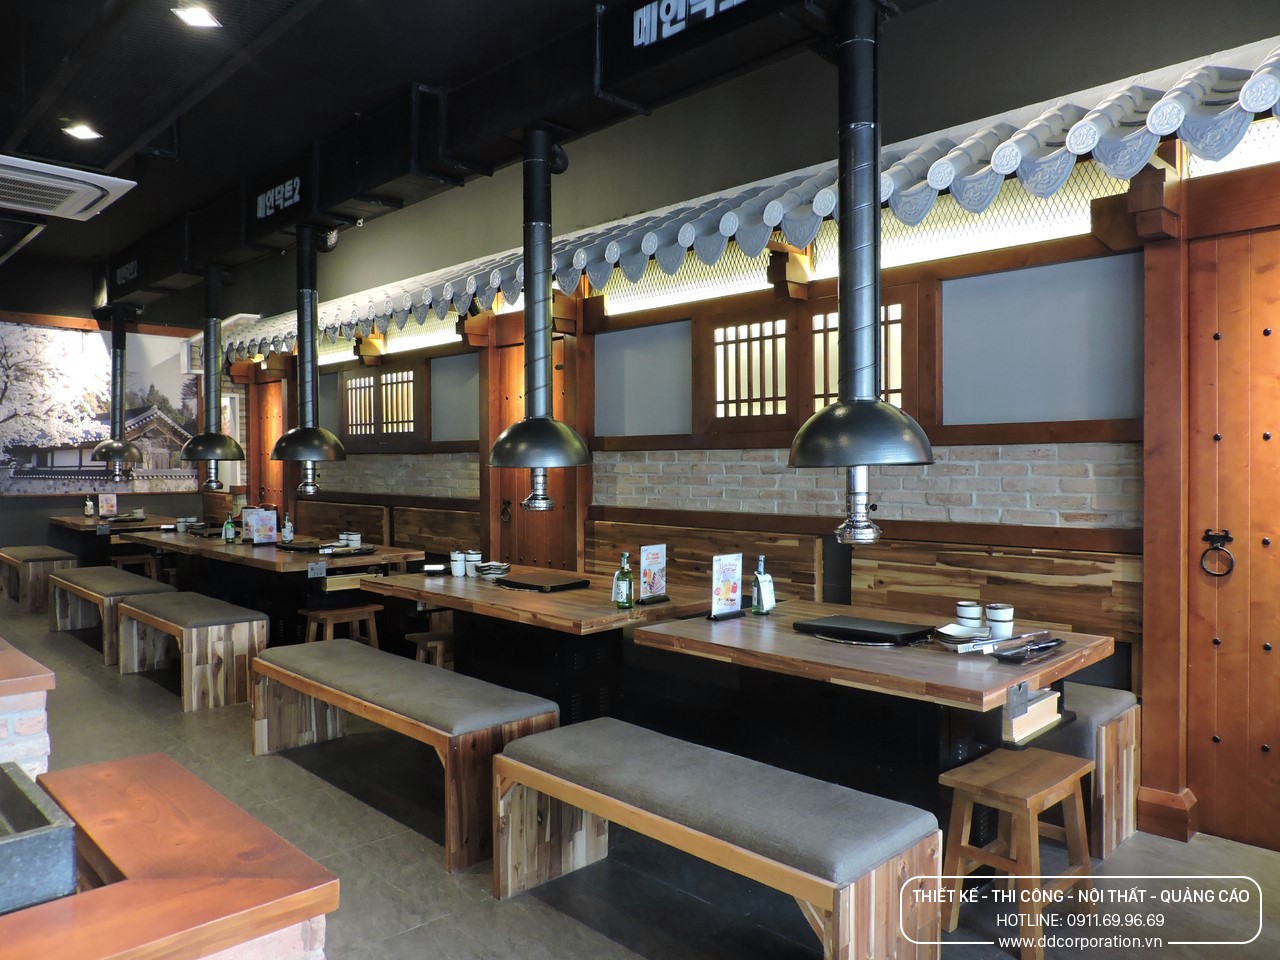 Công trình cụm nhà hàng Gogi House - Kichi Kichi - Crystal Jade Bình Dương